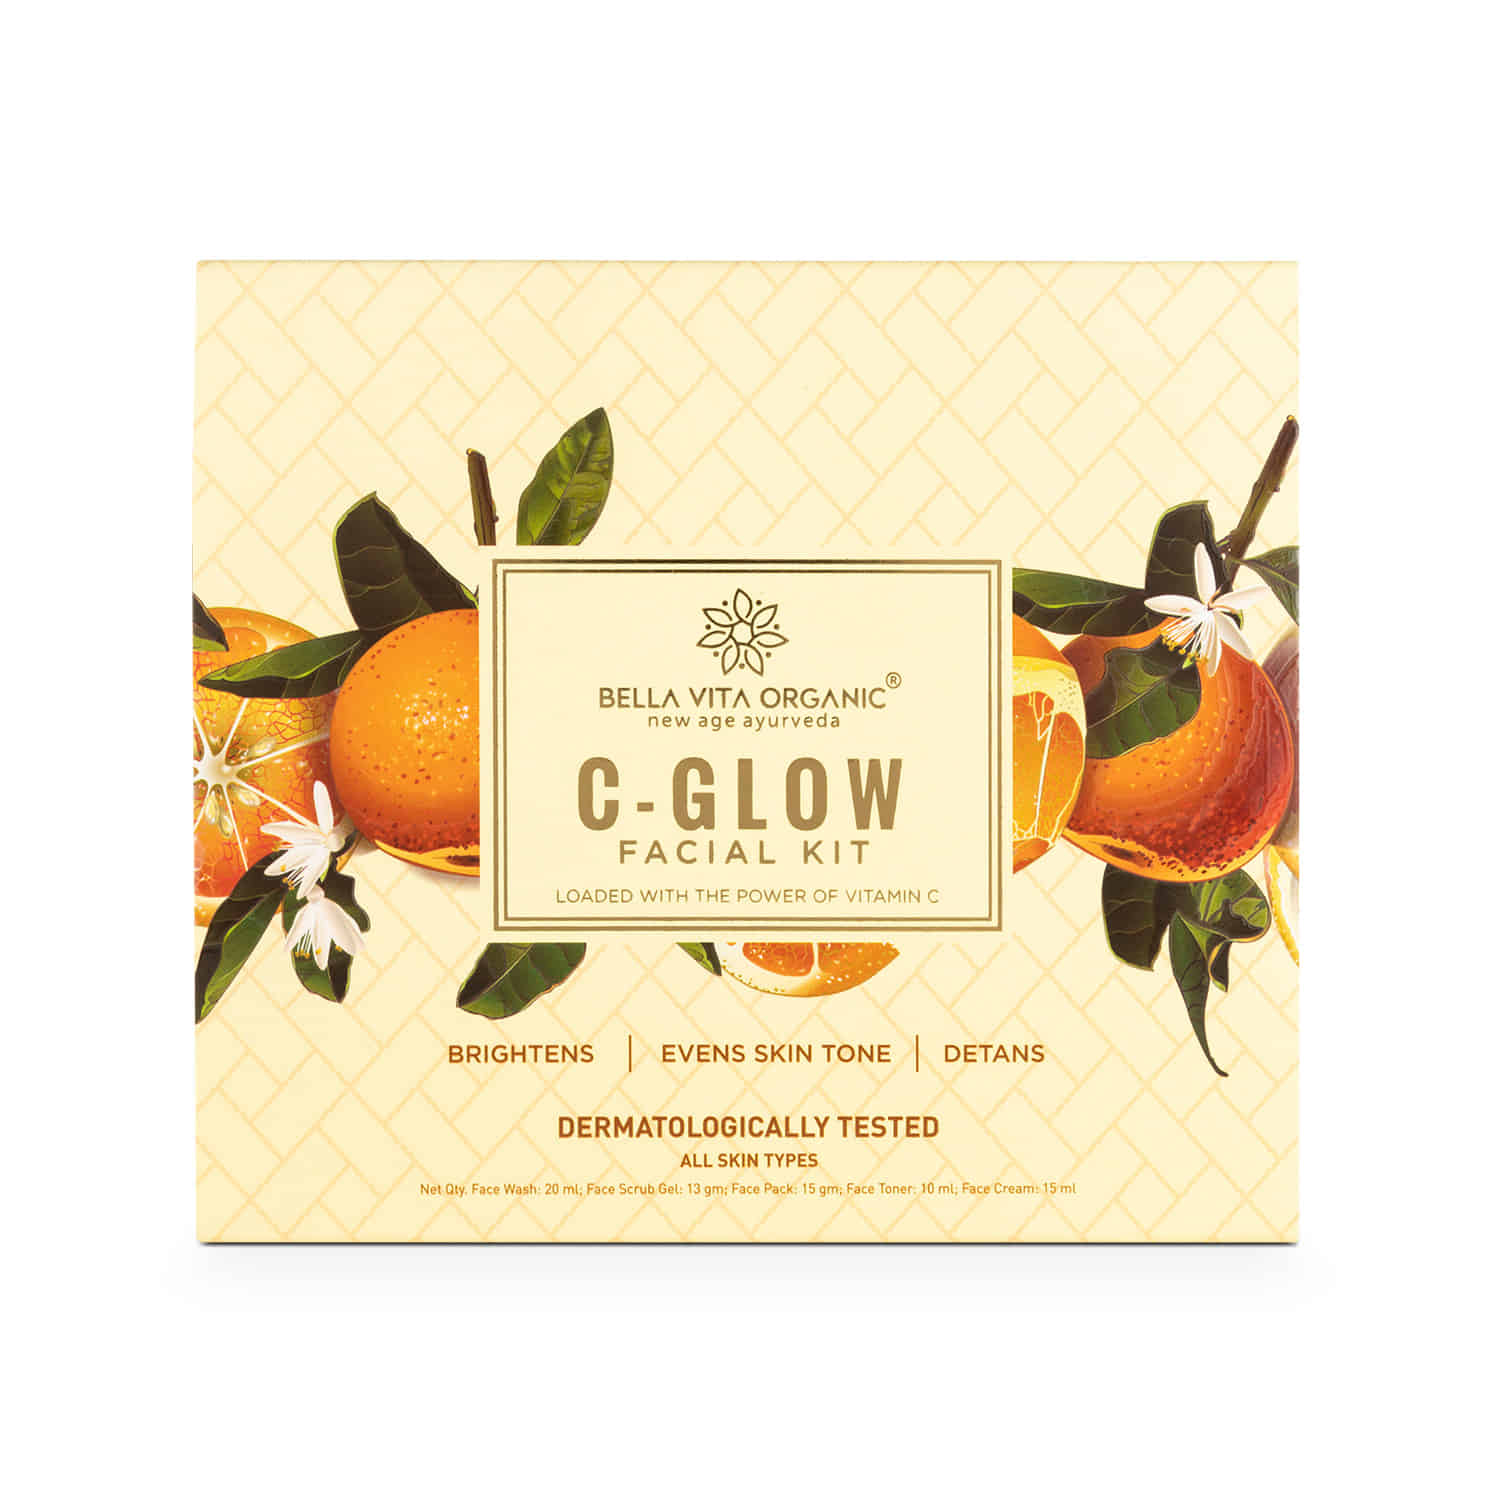 C-Glow Facial Kit